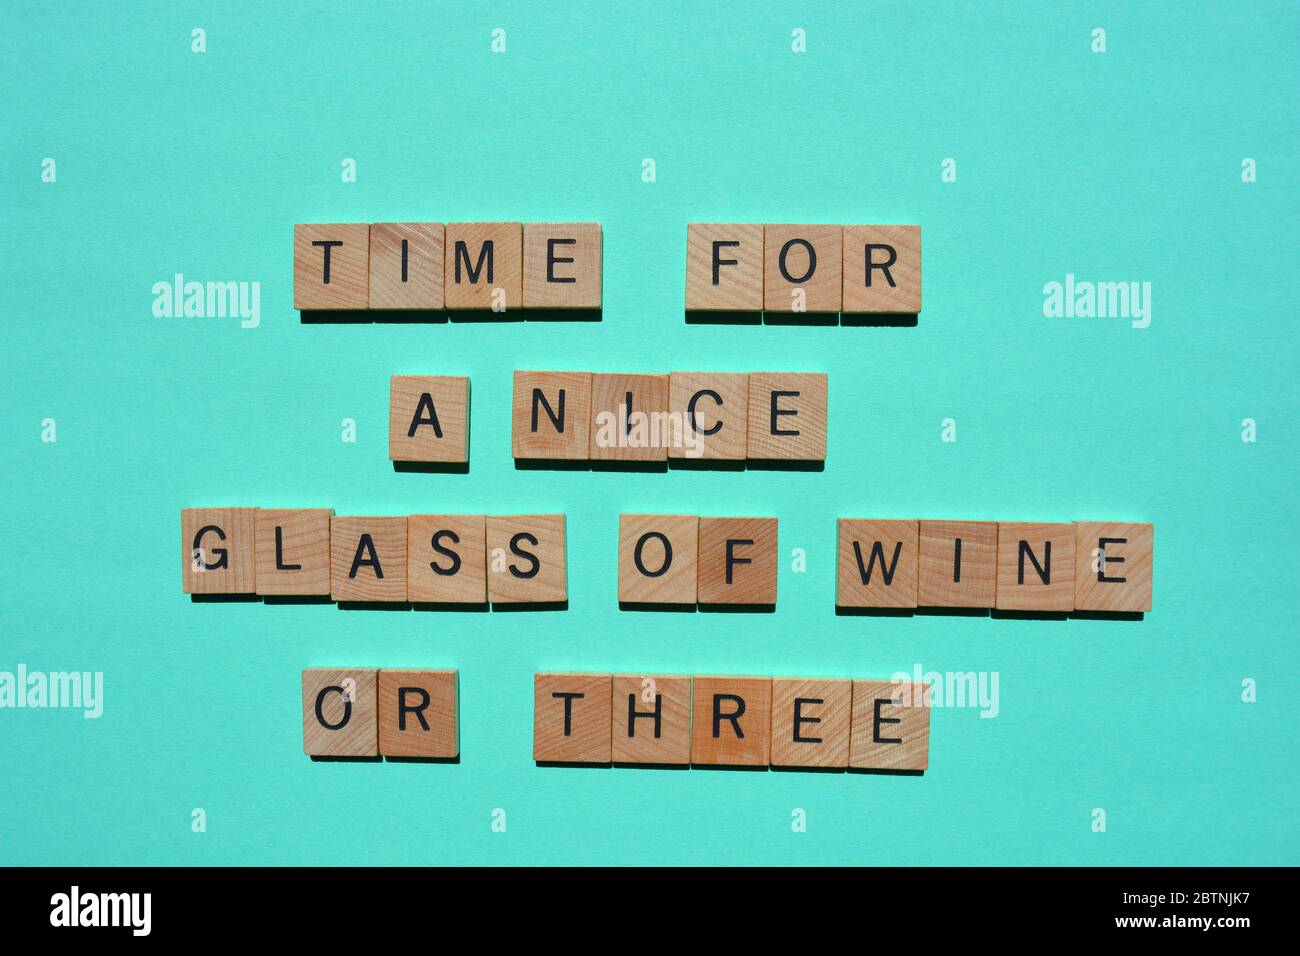 Tempo per UN bel bicchiere di vino o tre, parole in lettere di legno, isolate su sfondo turchese Foto Stock